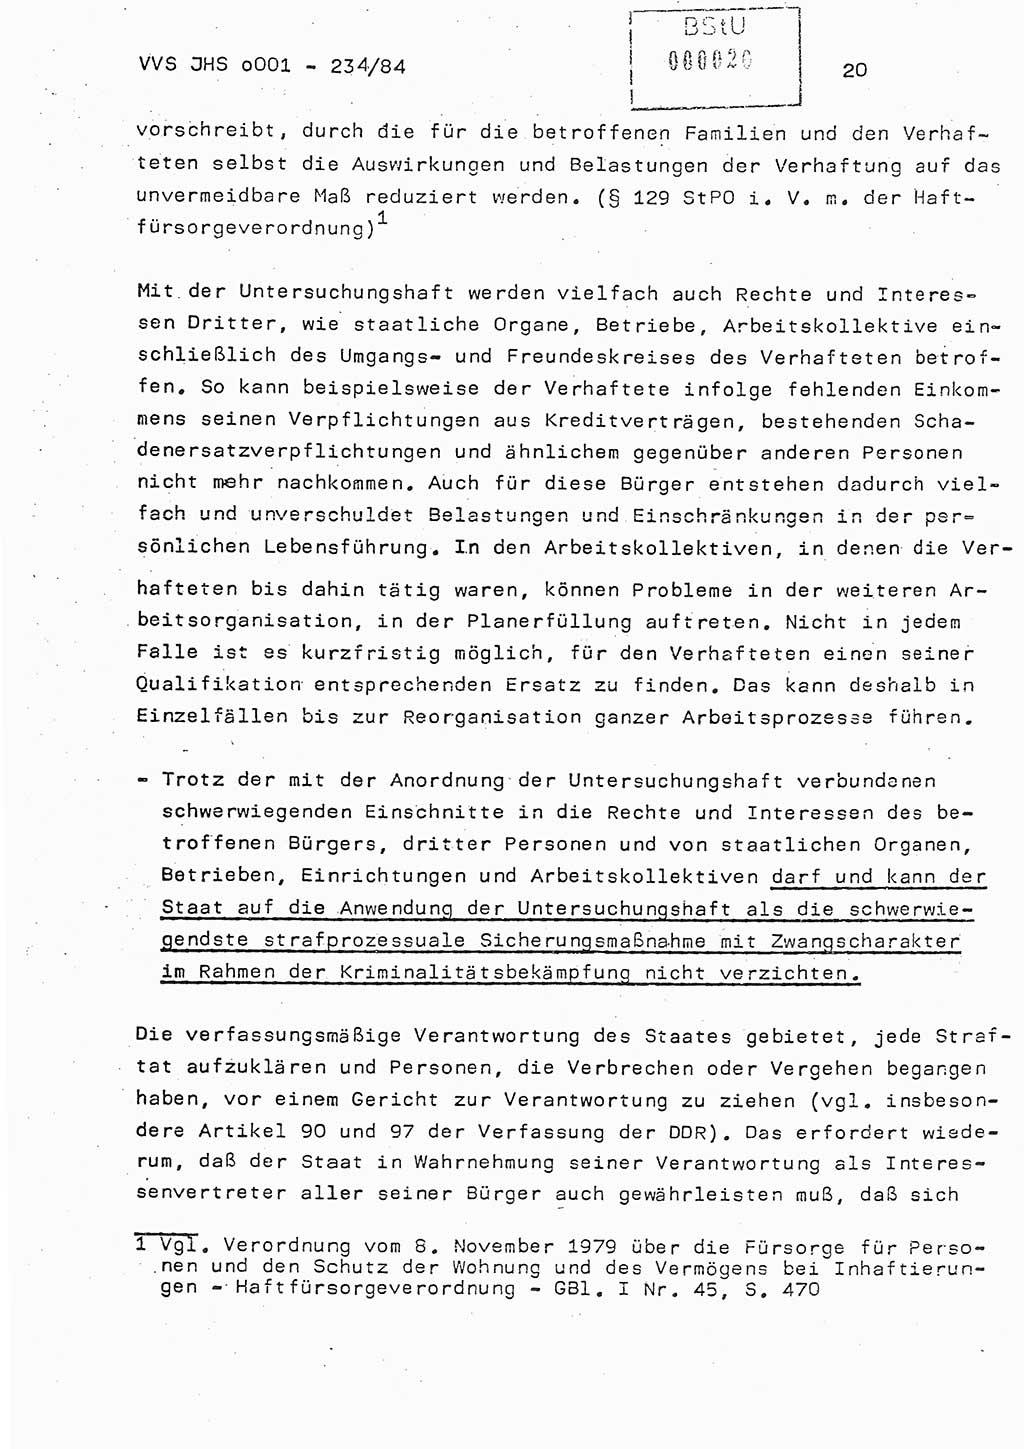 Dissertation Oberst Siegfried Rataizick (Abt. ⅩⅣ), Oberstleutnant Volkmar Heinz (Abt. ⅩⅣ), Oberstleutnant Werner Stein (HA Ⅸ), Hauptmann Heinz Conrad (JHS), Ministerium für Staatssicherheit (MfS) [Deutsche Demokratische Republik (DDR)], Juristische Hochschule (JHS), Vertrauliche Verschlußsache (VVS) o001-234/84, Potsdam 1984, Seite 20 (Diss. MfS DDR JHS VVS o001-234/84 1984, S. 20)